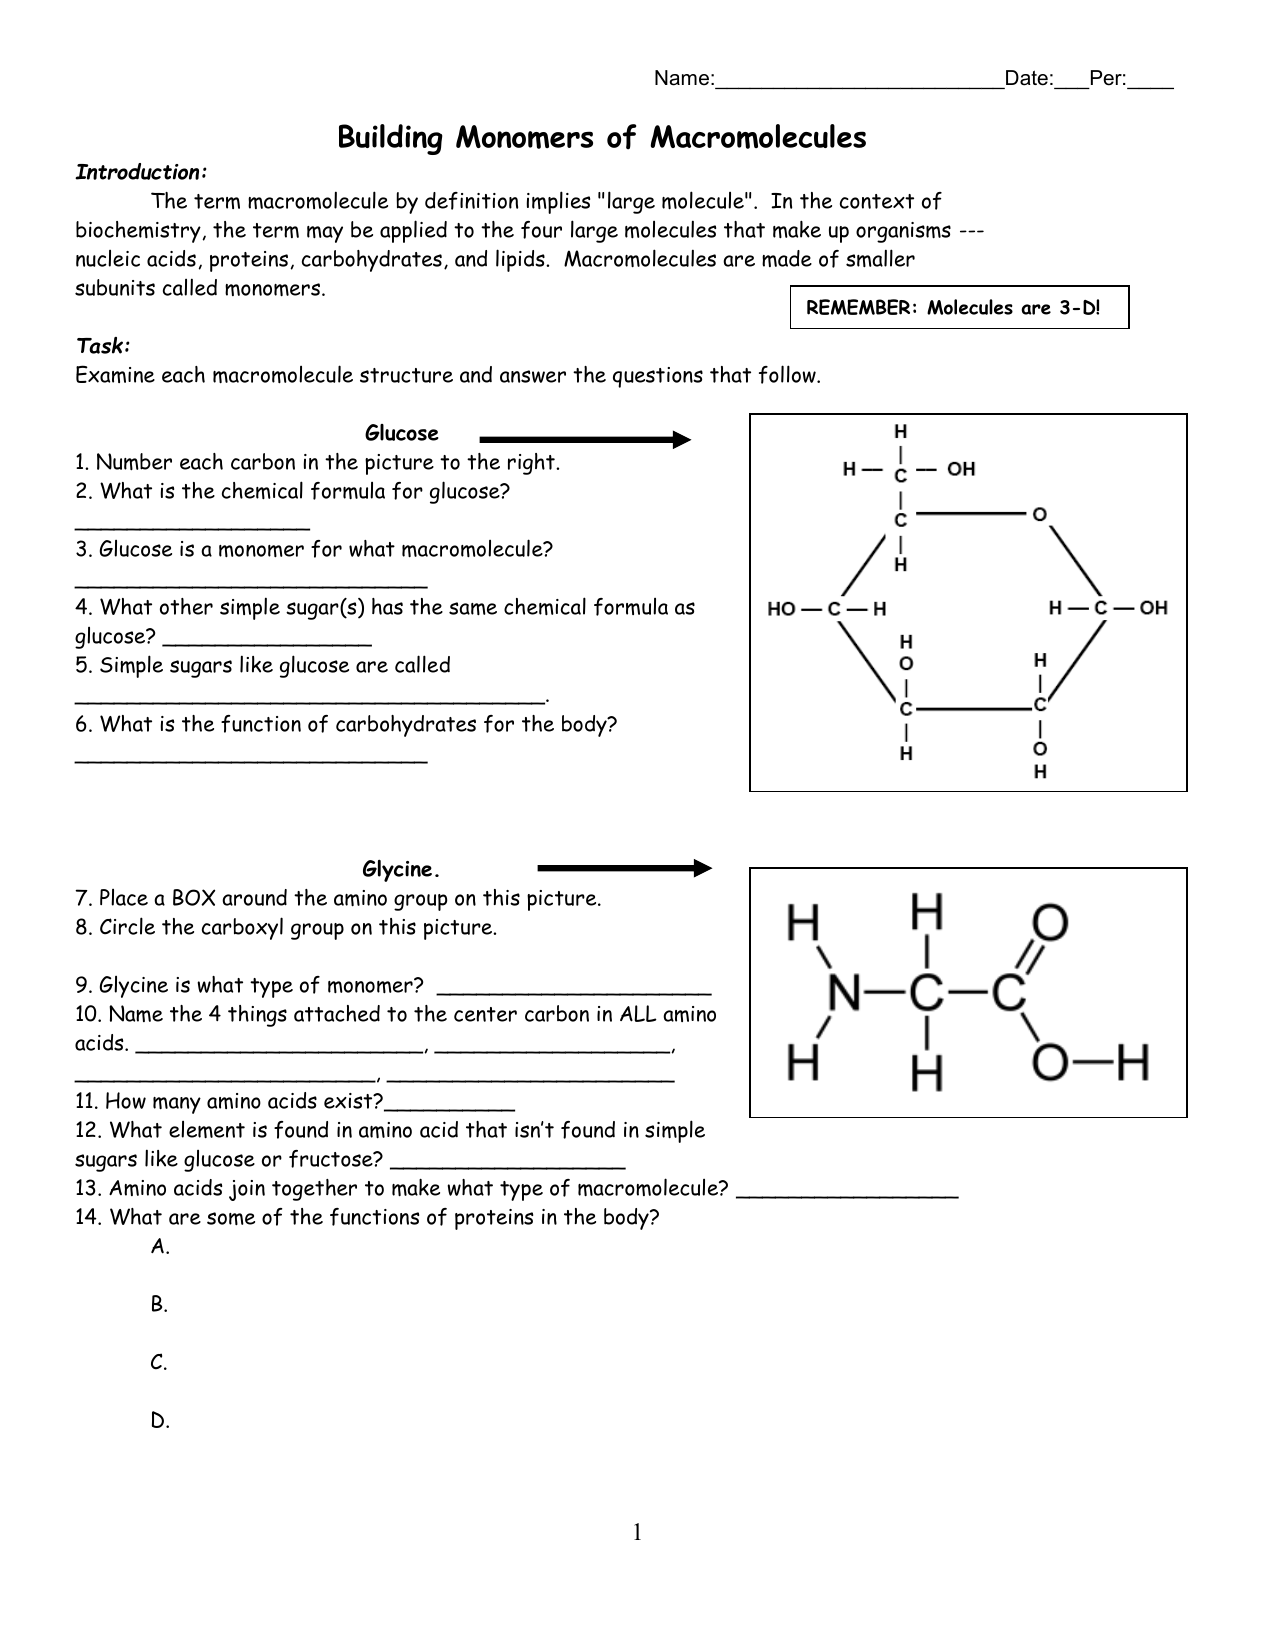 macromolecules-worksheet-2-answers